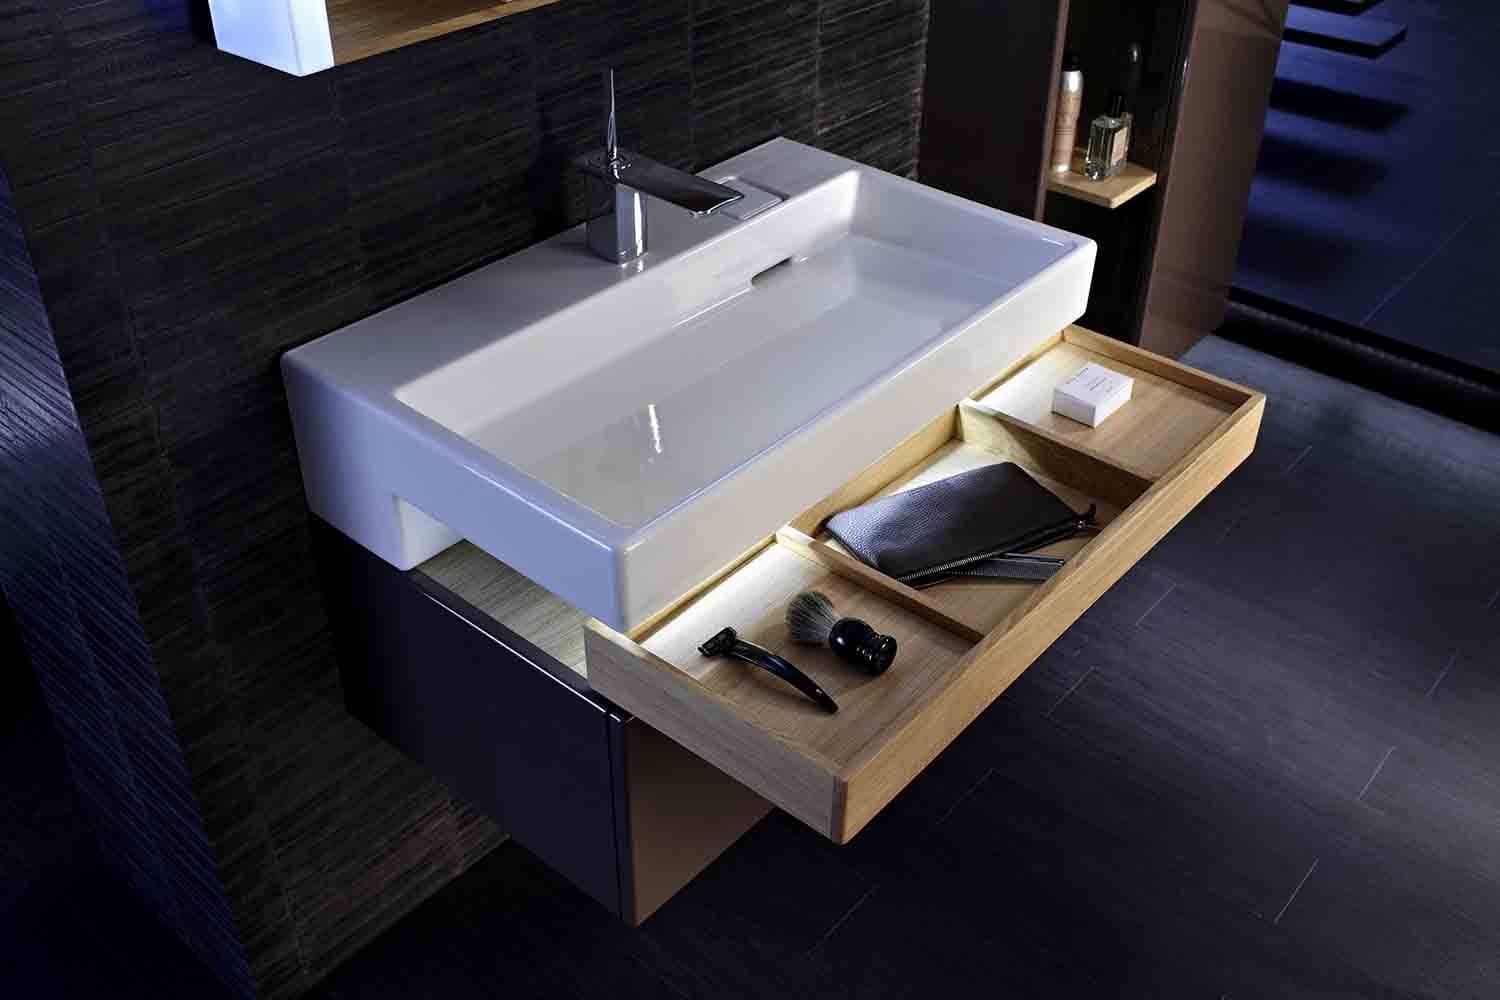 El diseño de la colección de mobiliario Terrace, de Jacob Delafon, se basa en las formas rectangulares ya que son las más naturales para los lavabos planos.
